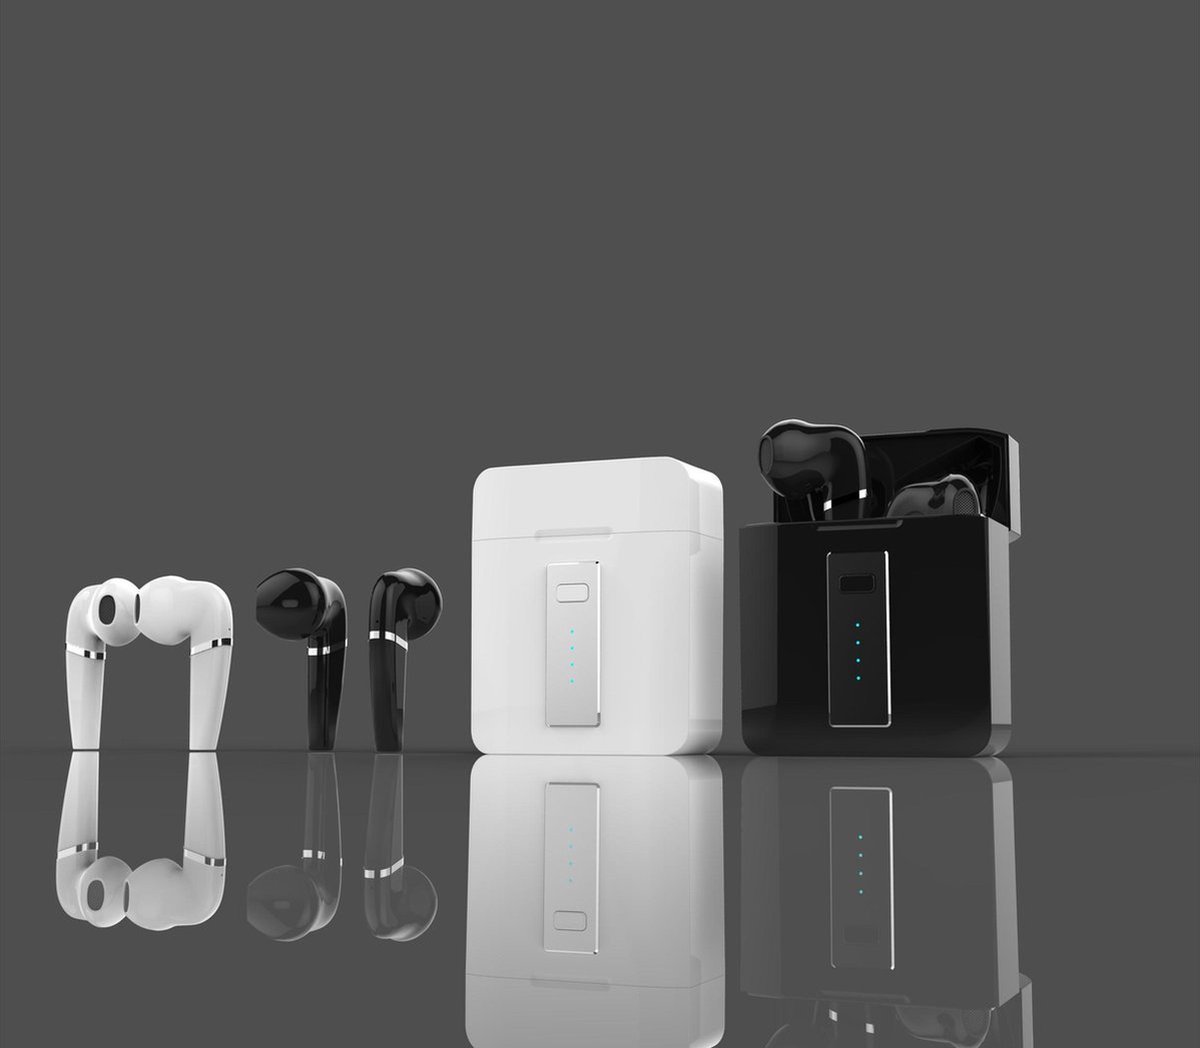 MF-03 Bluetooth oordopjes EarPods draadloos kraakhelder geluid Kleur Wit